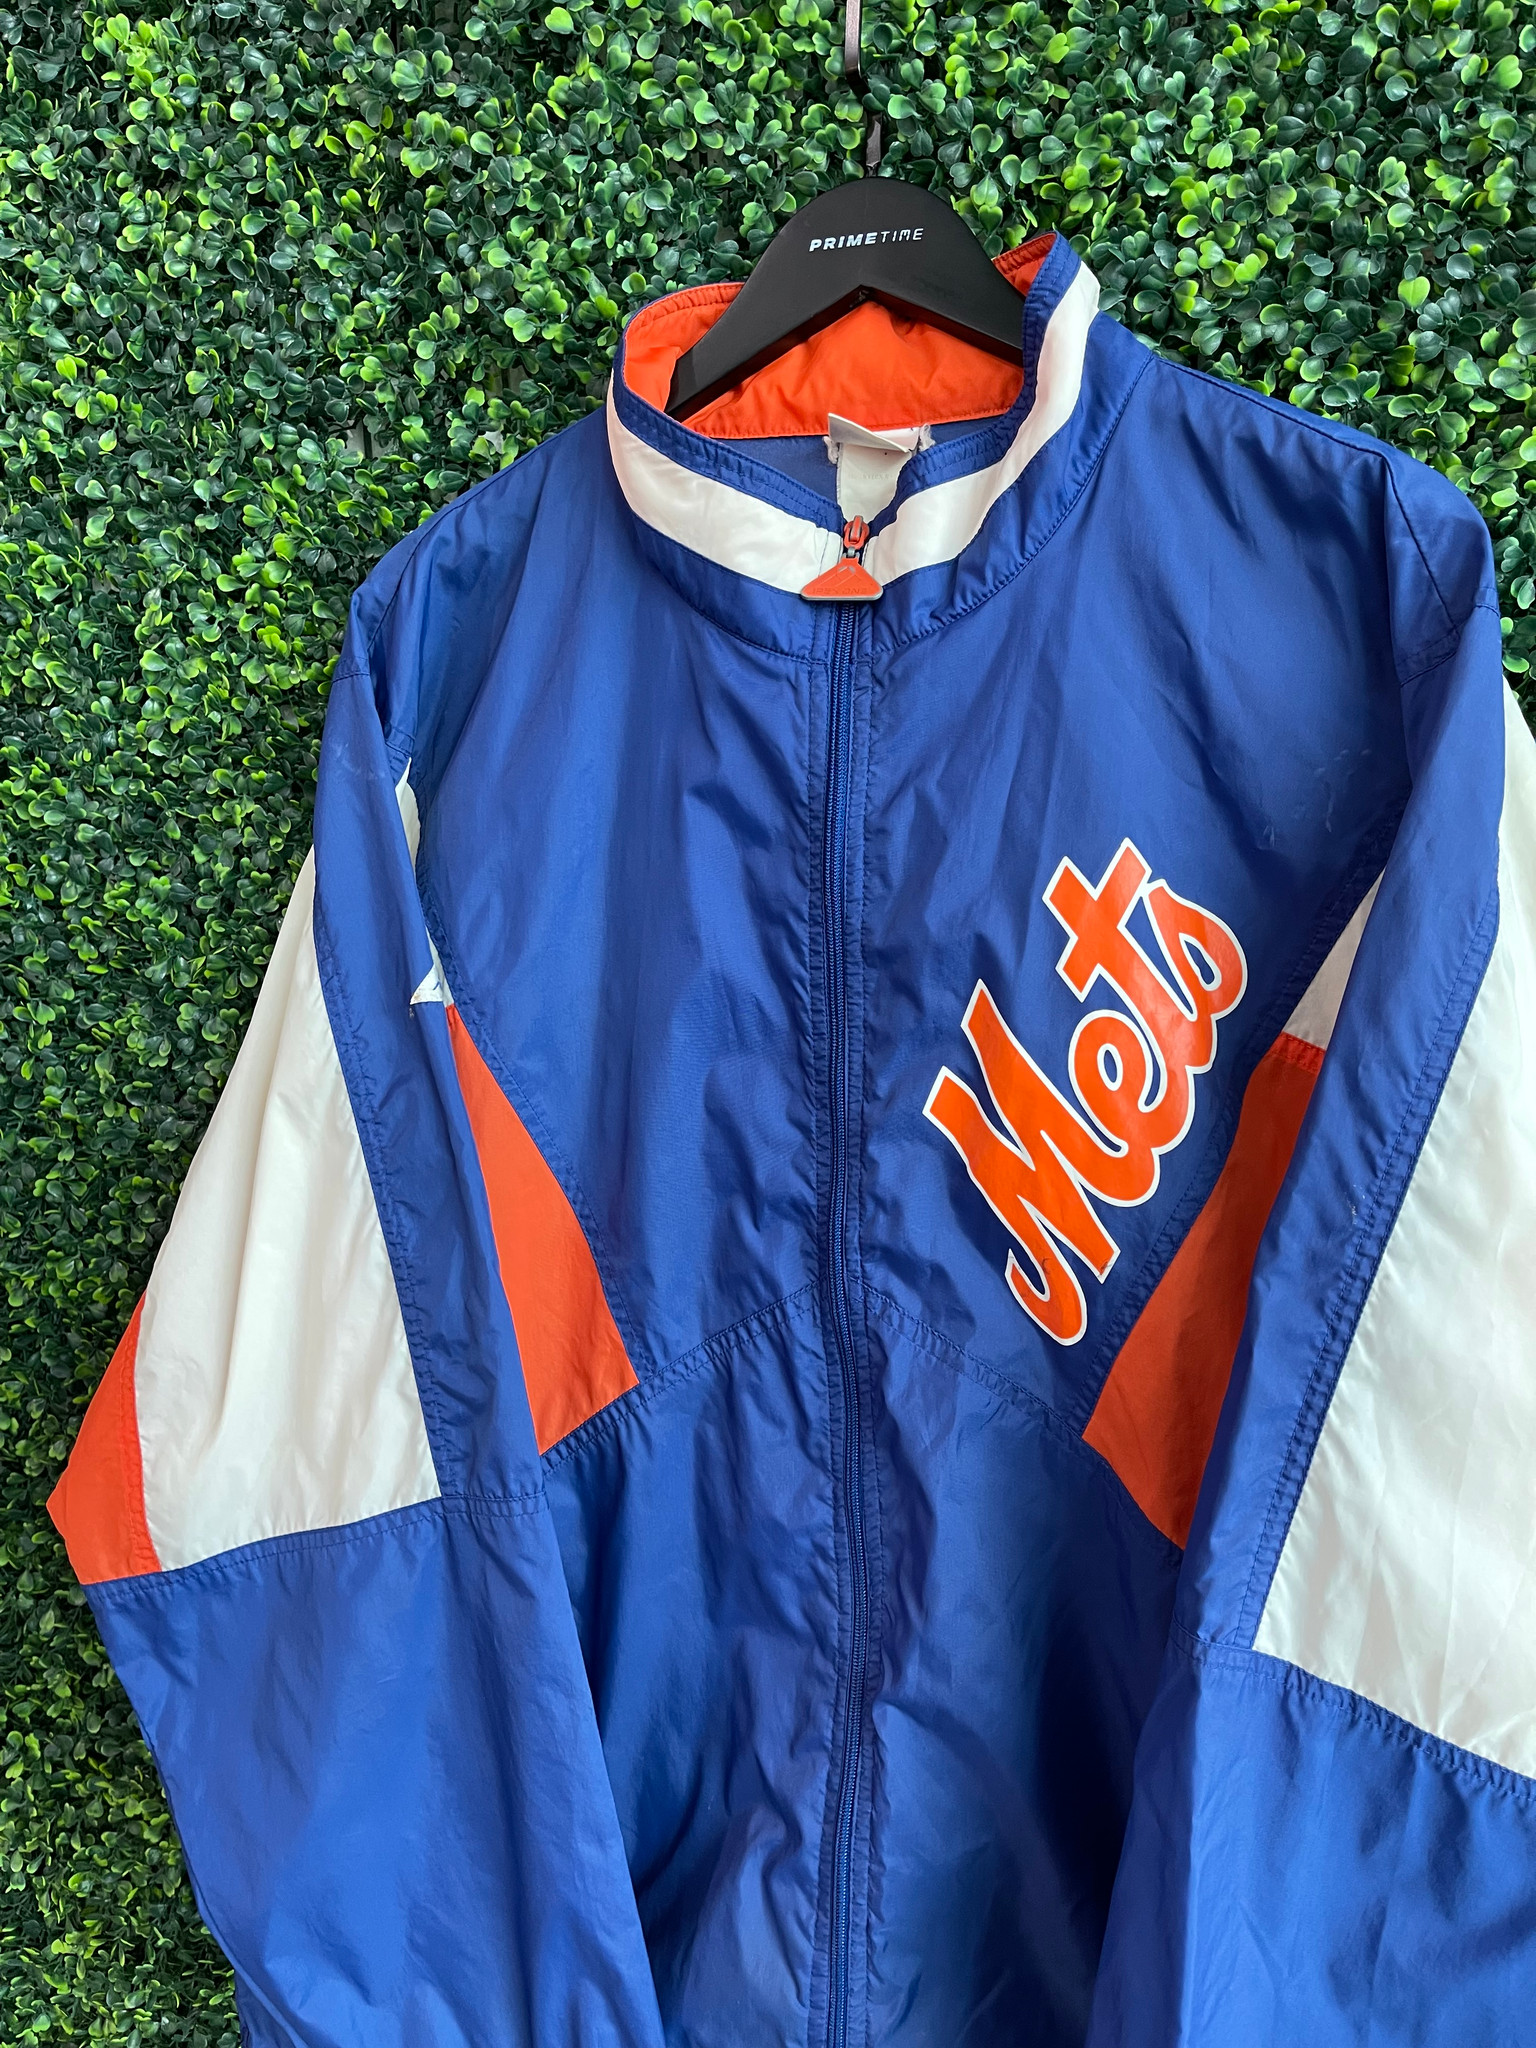 Vintage New York Mets Starter Jacket